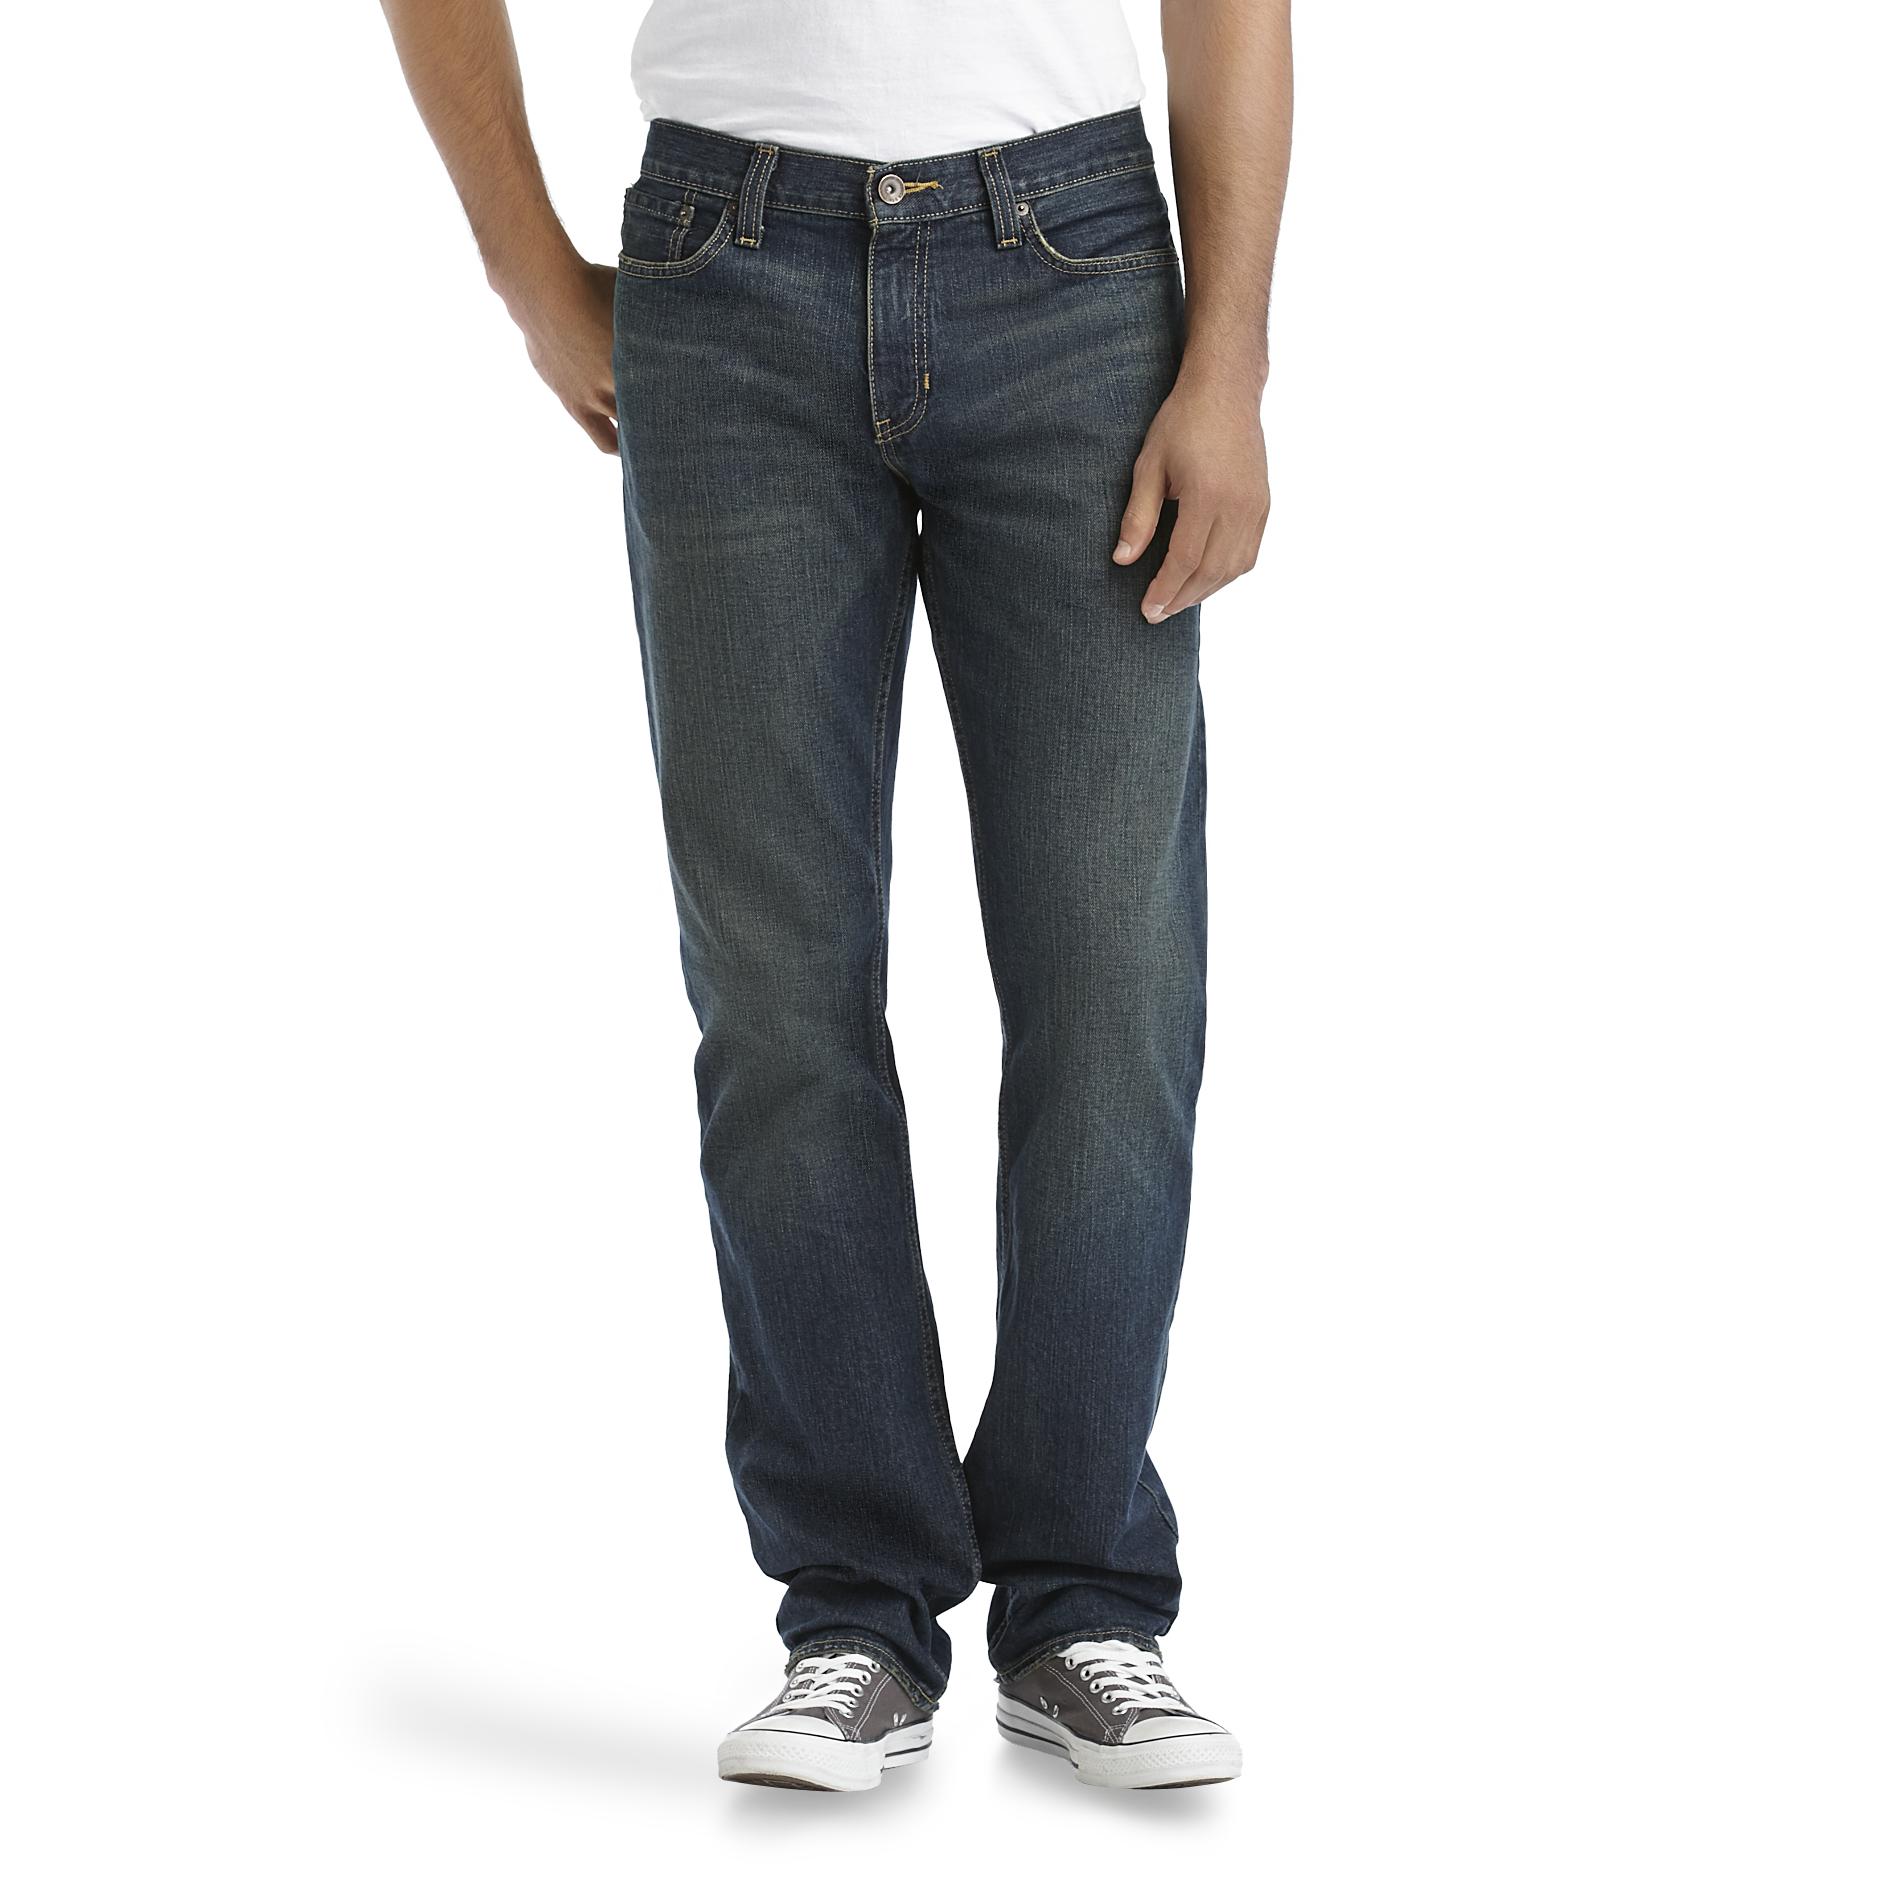 Roebuck & Co. Men's Slim Straight Leg Jeans